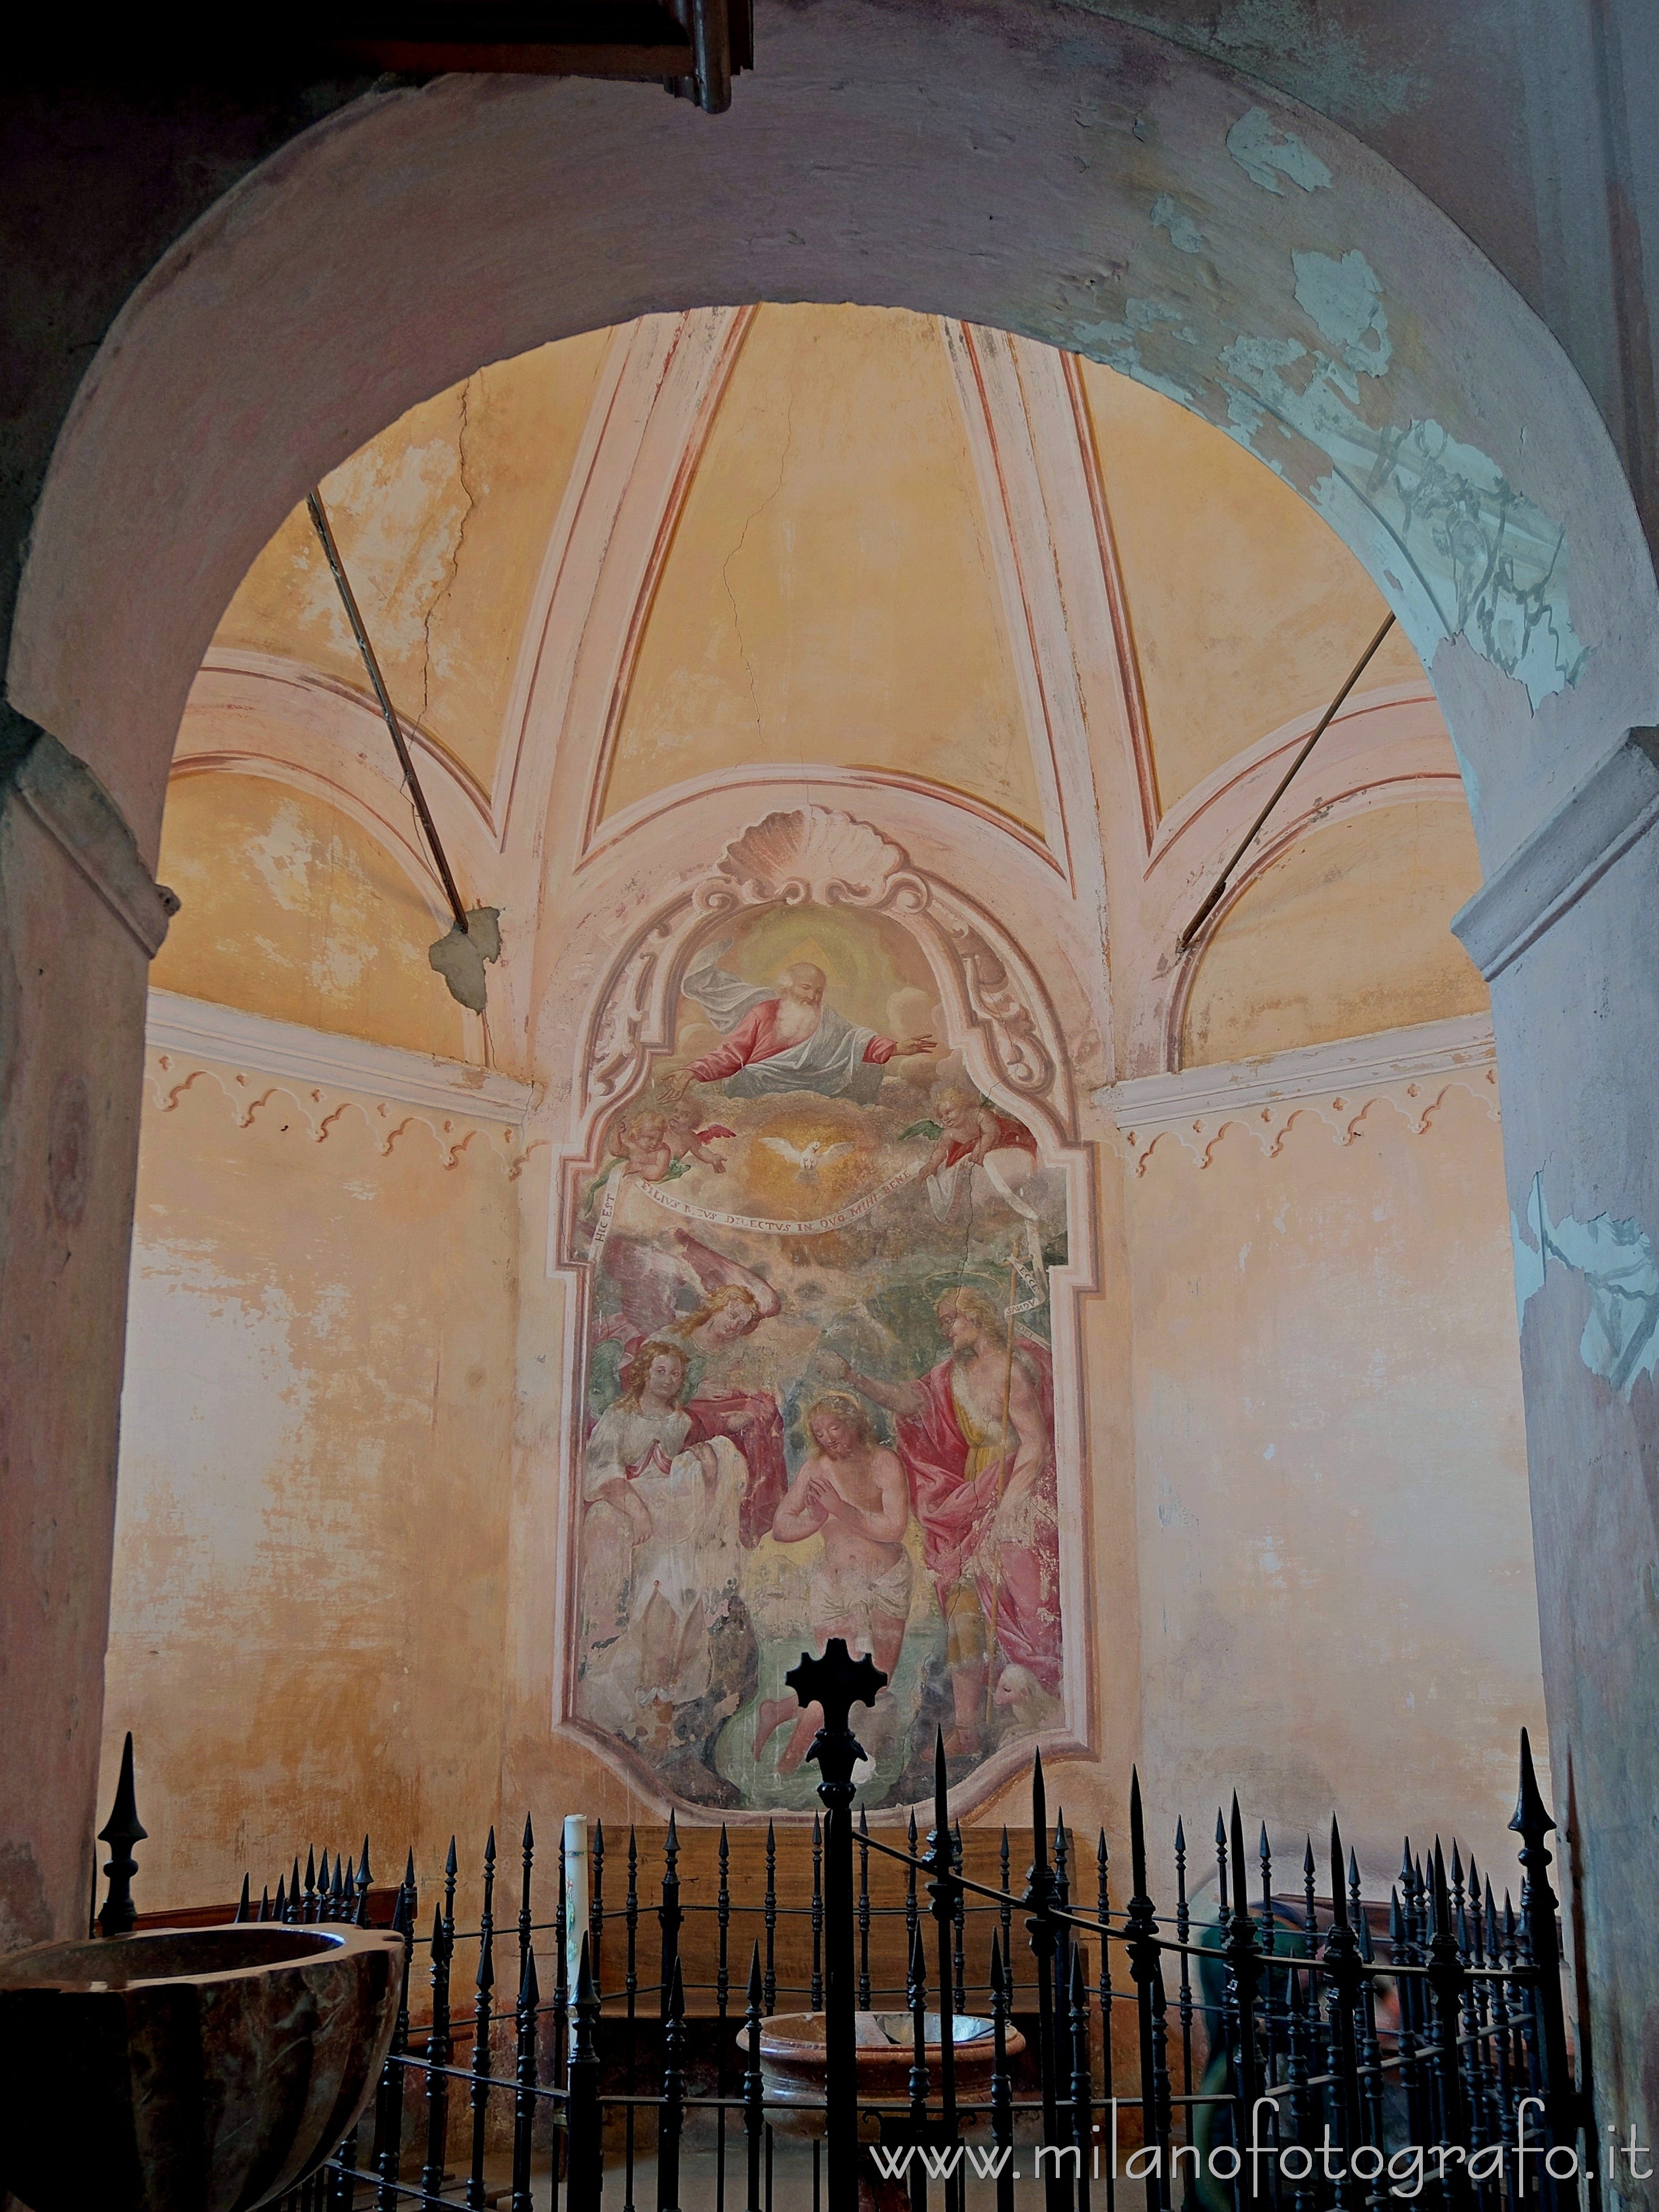 Sillavengo (Novara): Cappella con fonte battesimale nella Chiesa di San Giovanni - Sillavengo (Novara)